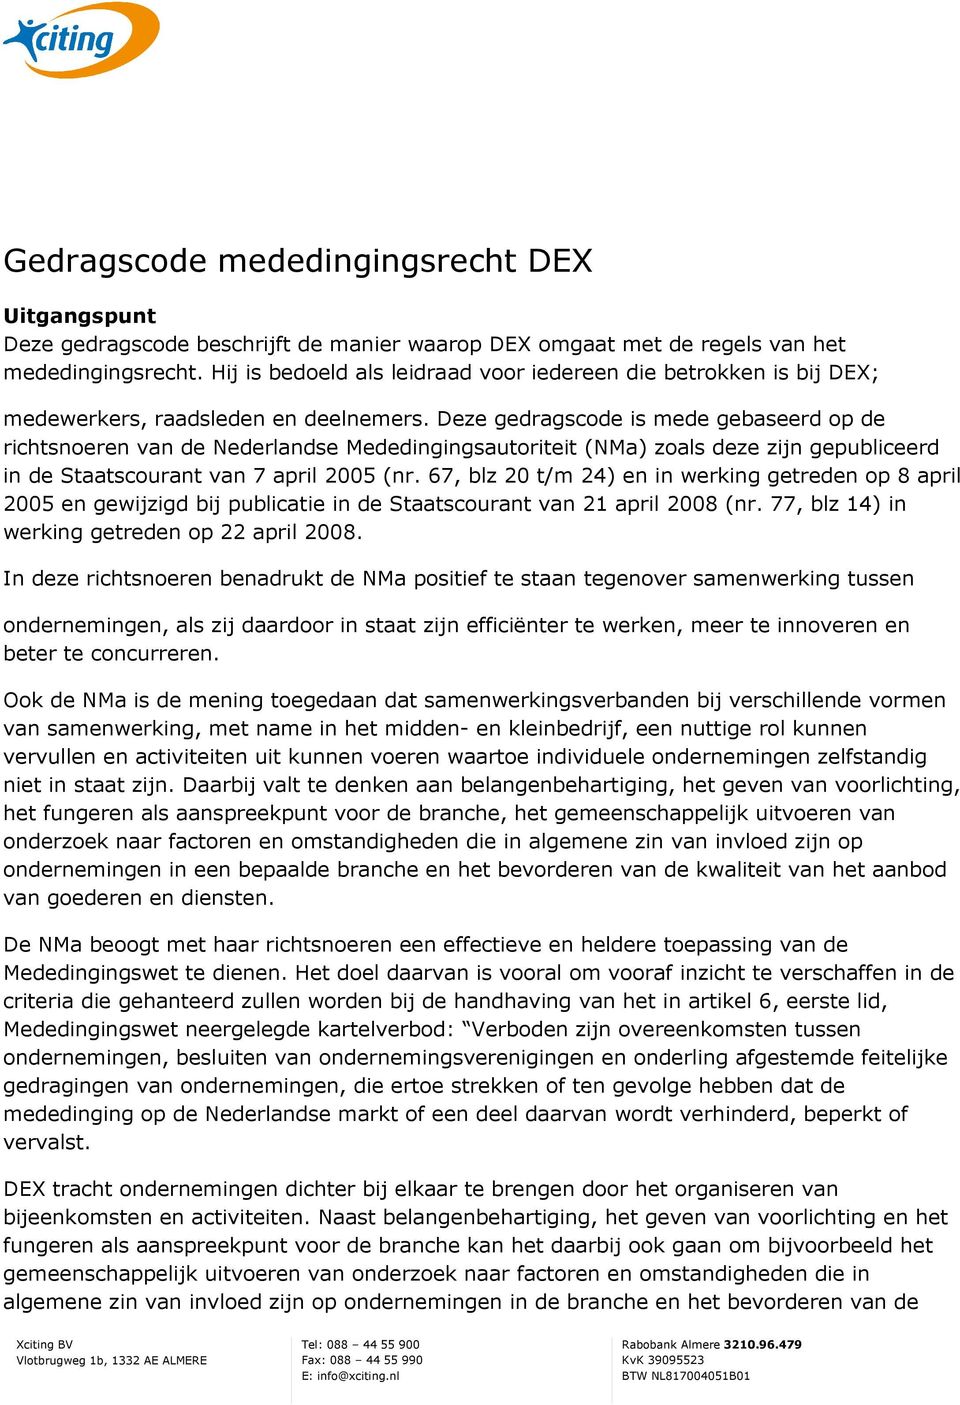 Deze gedragscode is mede gebaseerd op de richtsnoeren van de Nederlandse Mededingingsautoriteit (NMa) zoals deze zijn gepubliceerd in de Staatscourant van 7 april 2005 (nr.